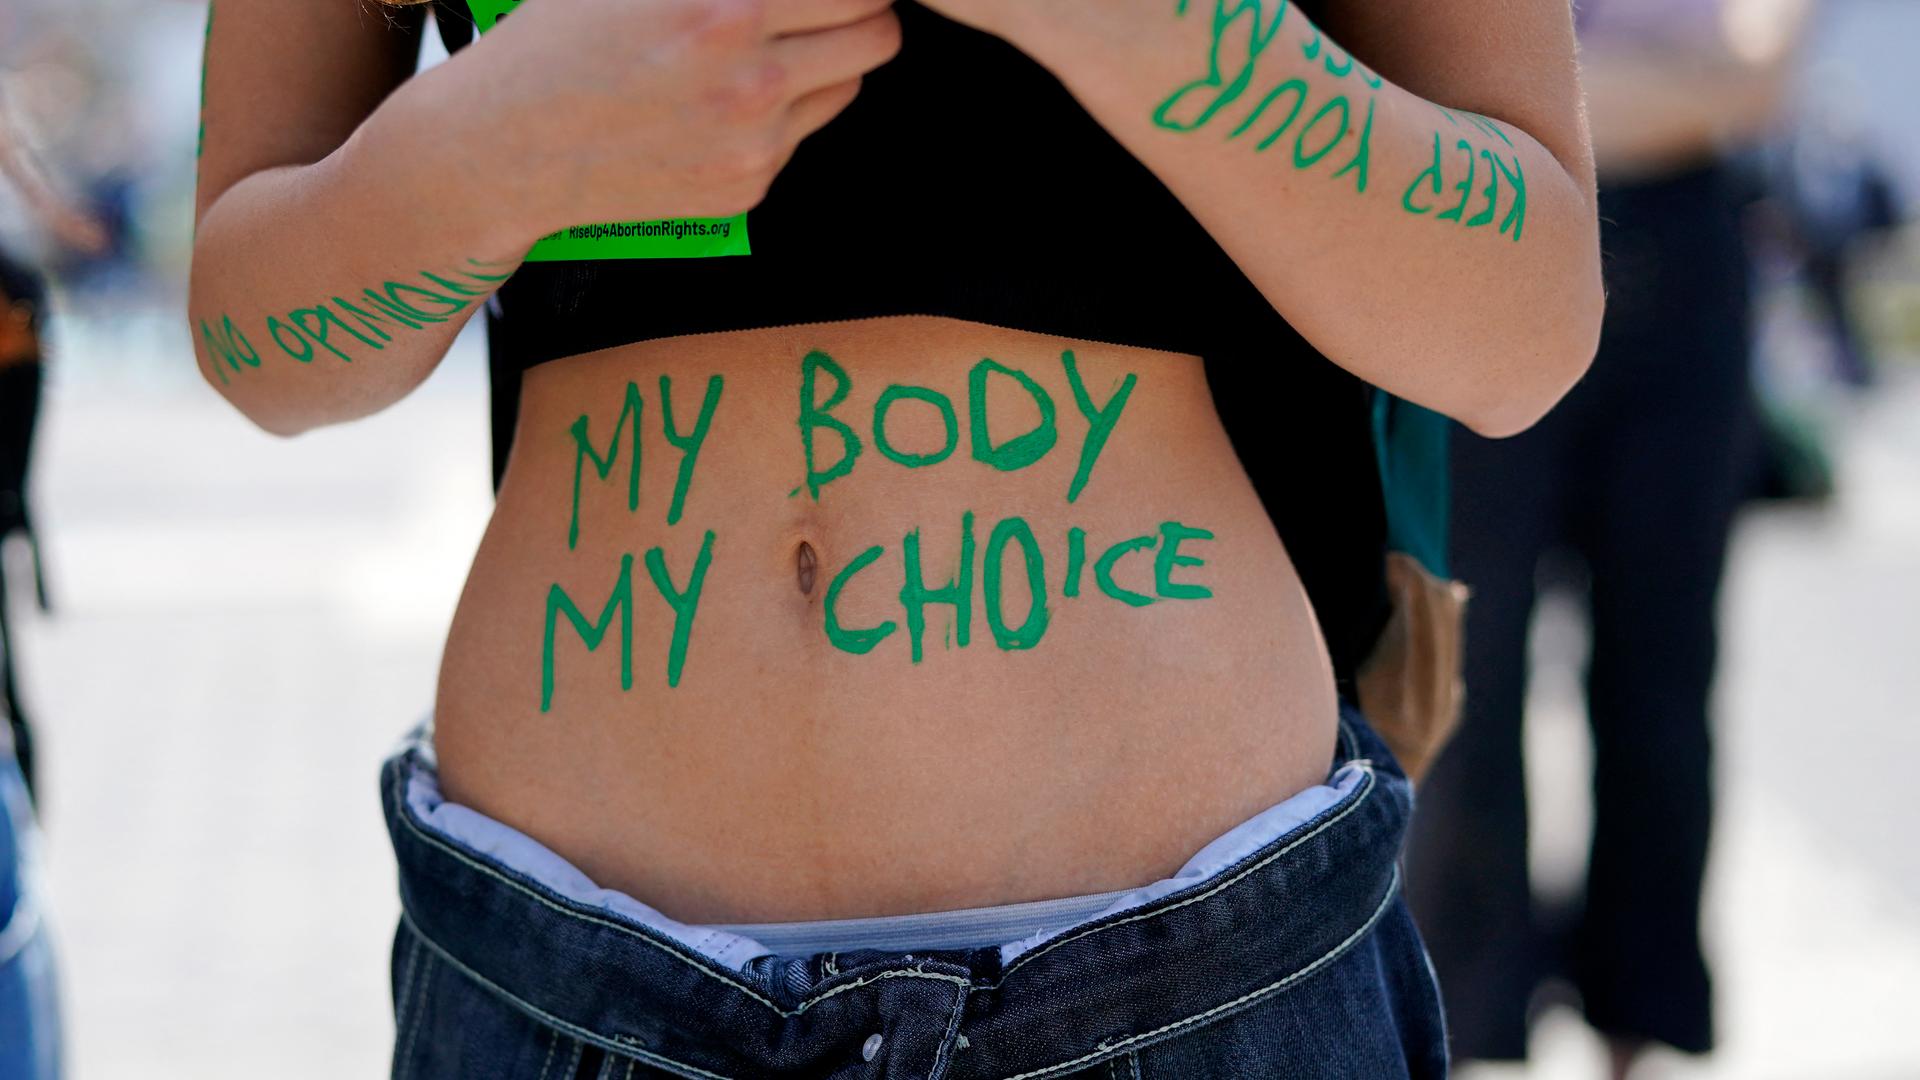 Eine Frau mit bauchfreiem Top nimmt an einer Demonstration teil. Auf ihrem Bauch sind mit grüner Farbe die Wörter "my body my choice" zu lesen.